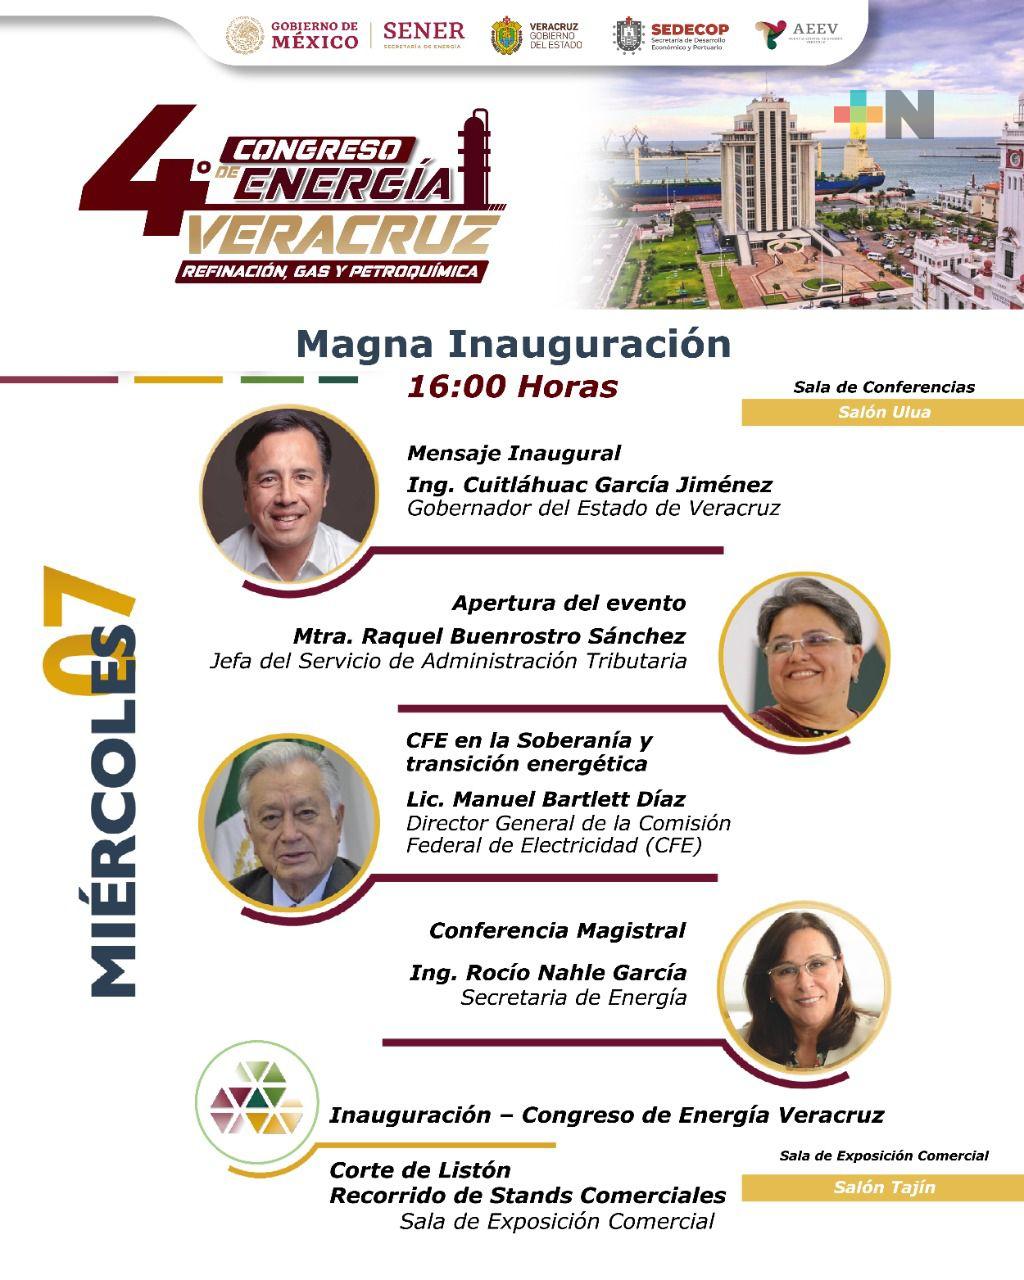 Del 7 al 9 de septiembre, 4o.Congreso de Energía Veracruz en WTC